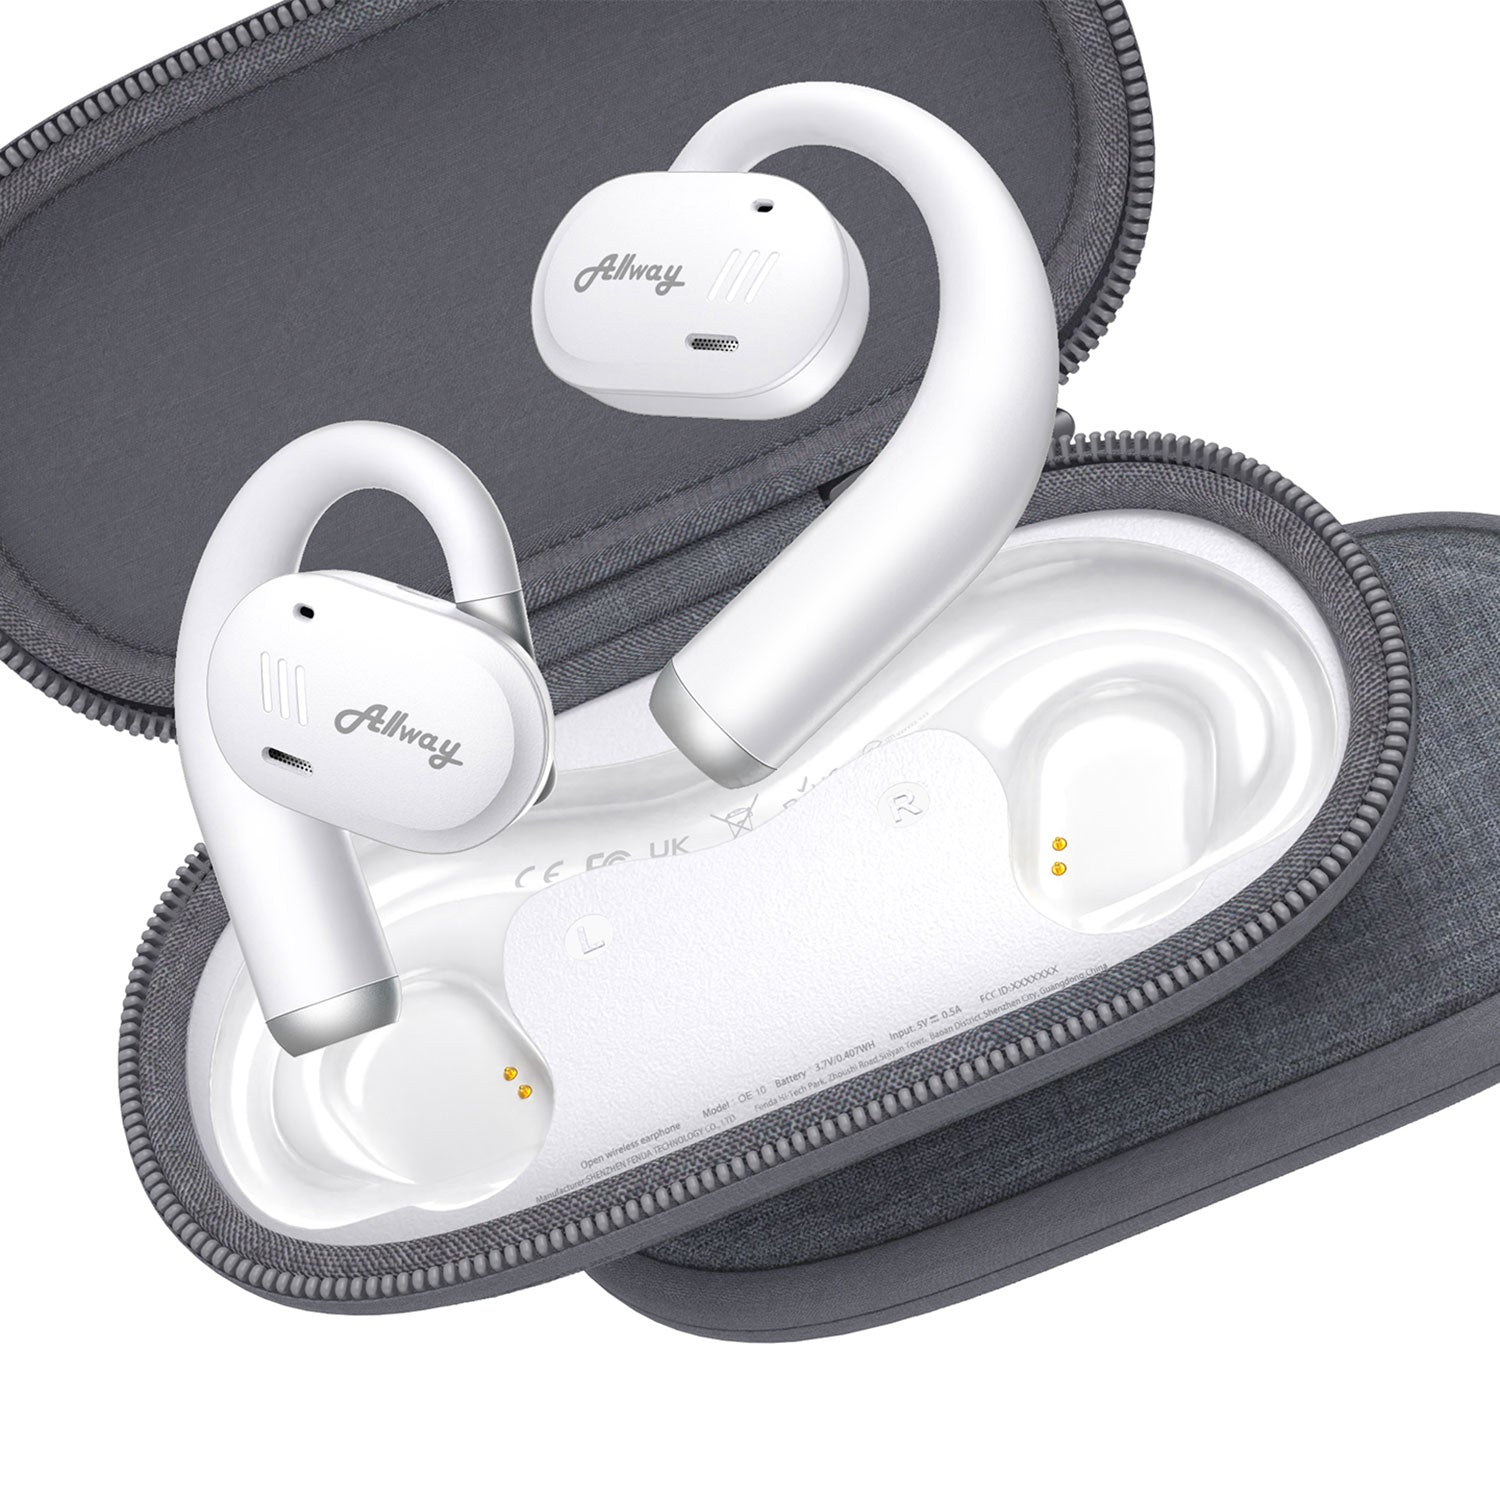 Allway OE10 Open-Ear True Wireless Earbuds